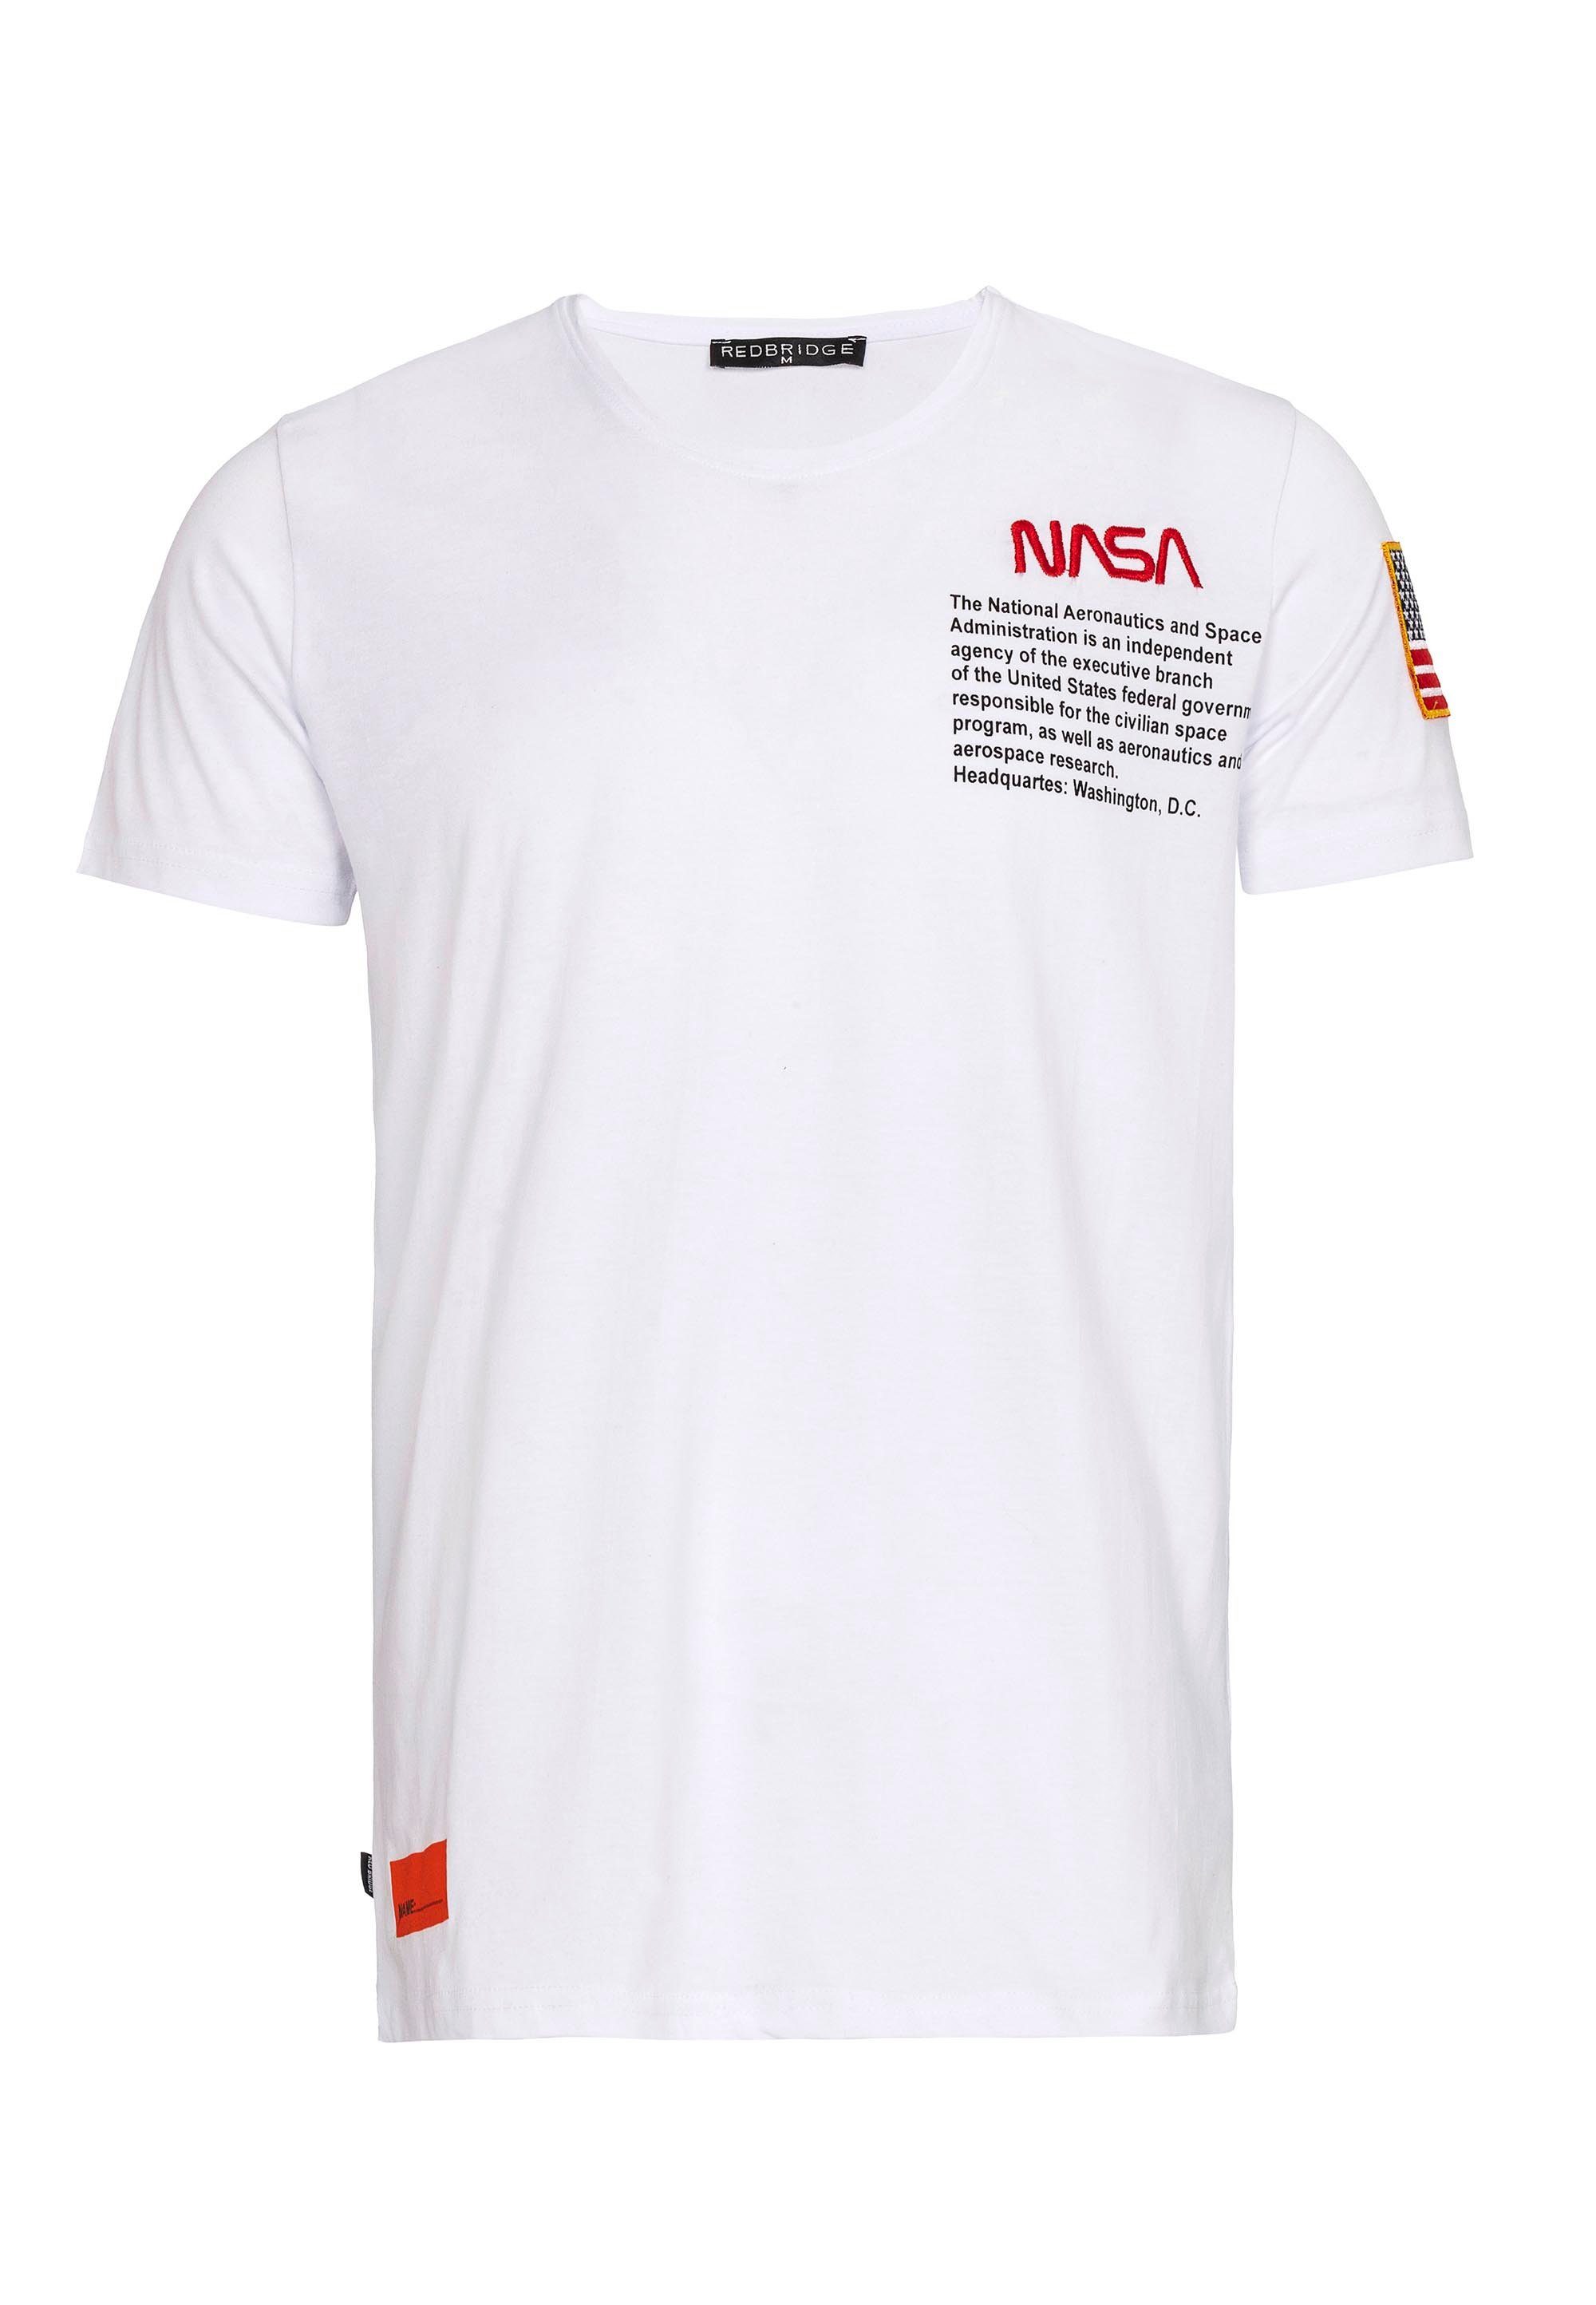 RedBridge T-Shirt NASA-Design mit gesticktem weiß Tucson